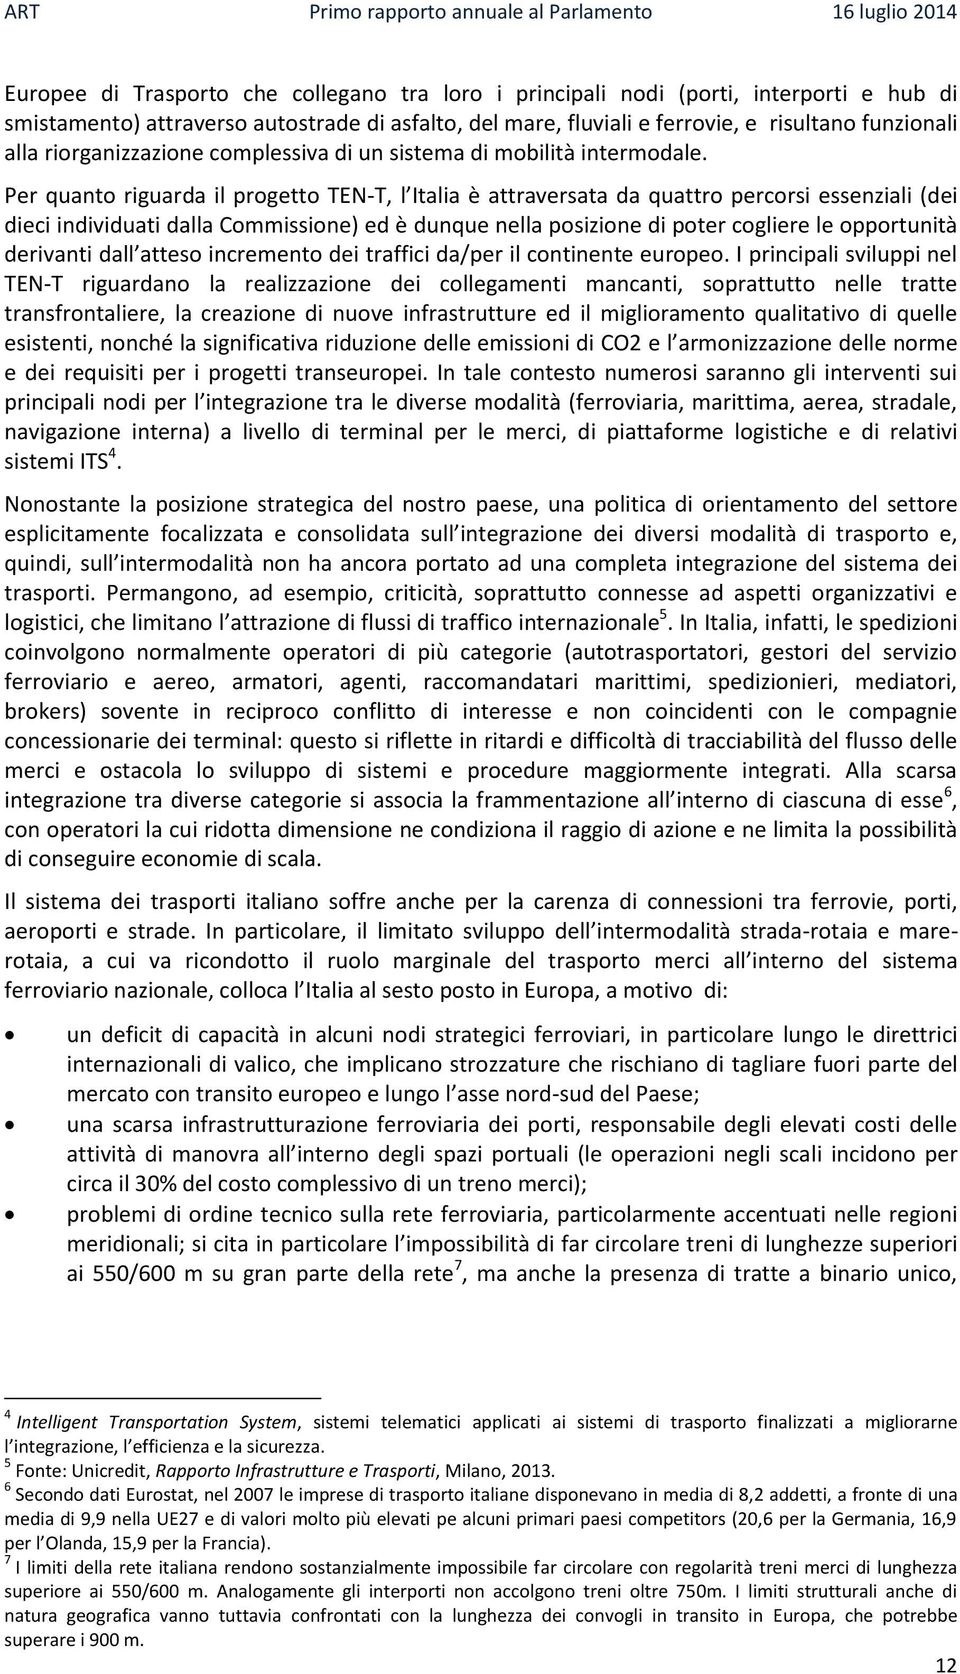 Per quanto riguarda il progetto TEN-T, l Italia è attraversata da quattro percorsi essenziali (dei dieci individuati dalla Commissione) ed è dunque nella posizione di poter cogliere le opportunità